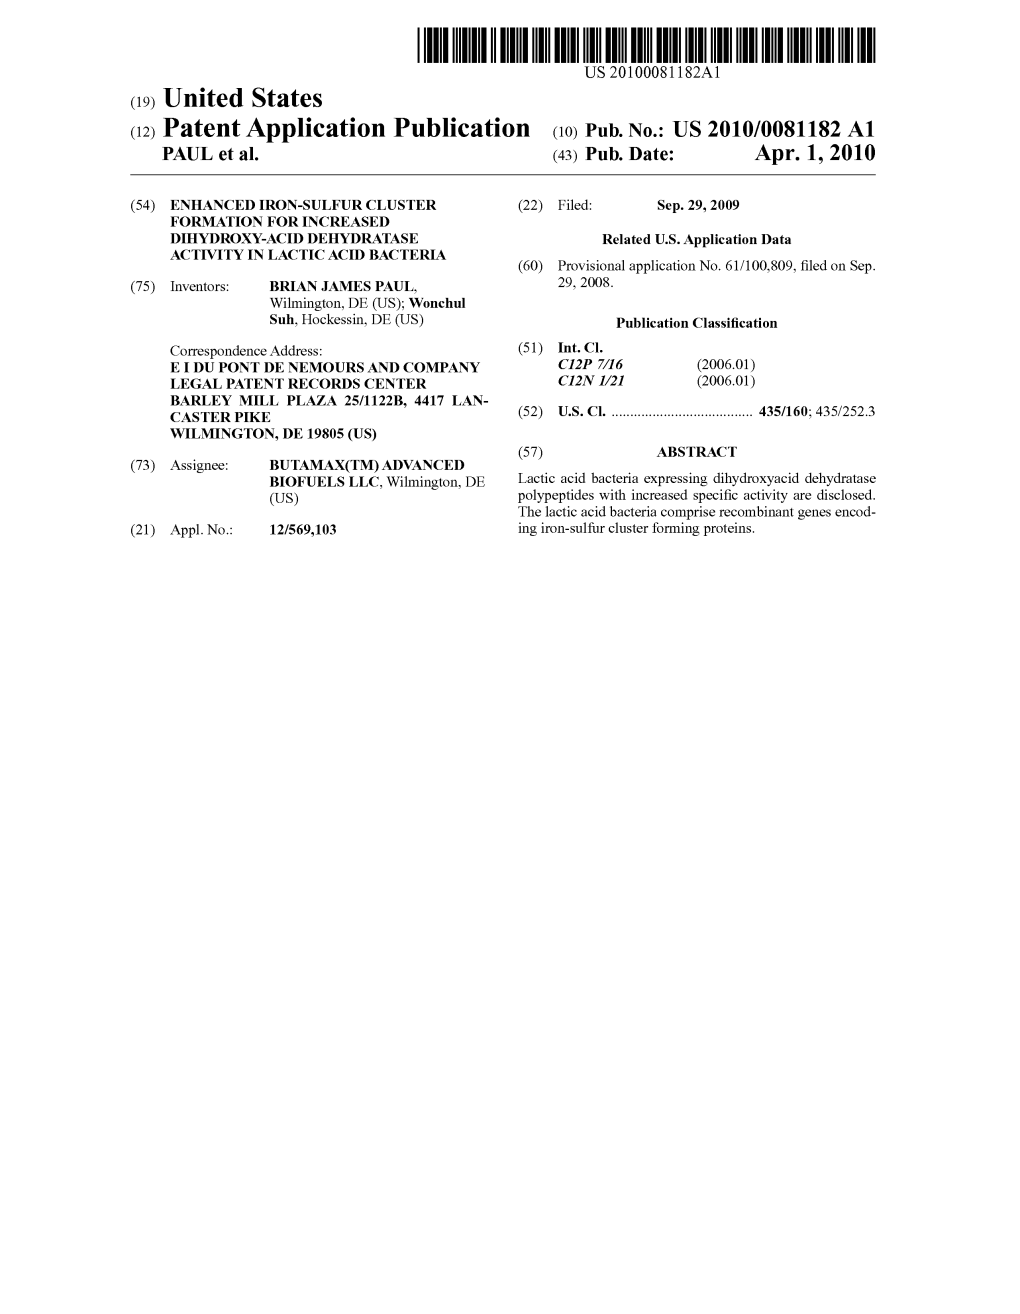 (12) Patent Application Publication (10) Pub. No.: US 2010/0081182 A1 PAUL Et Al